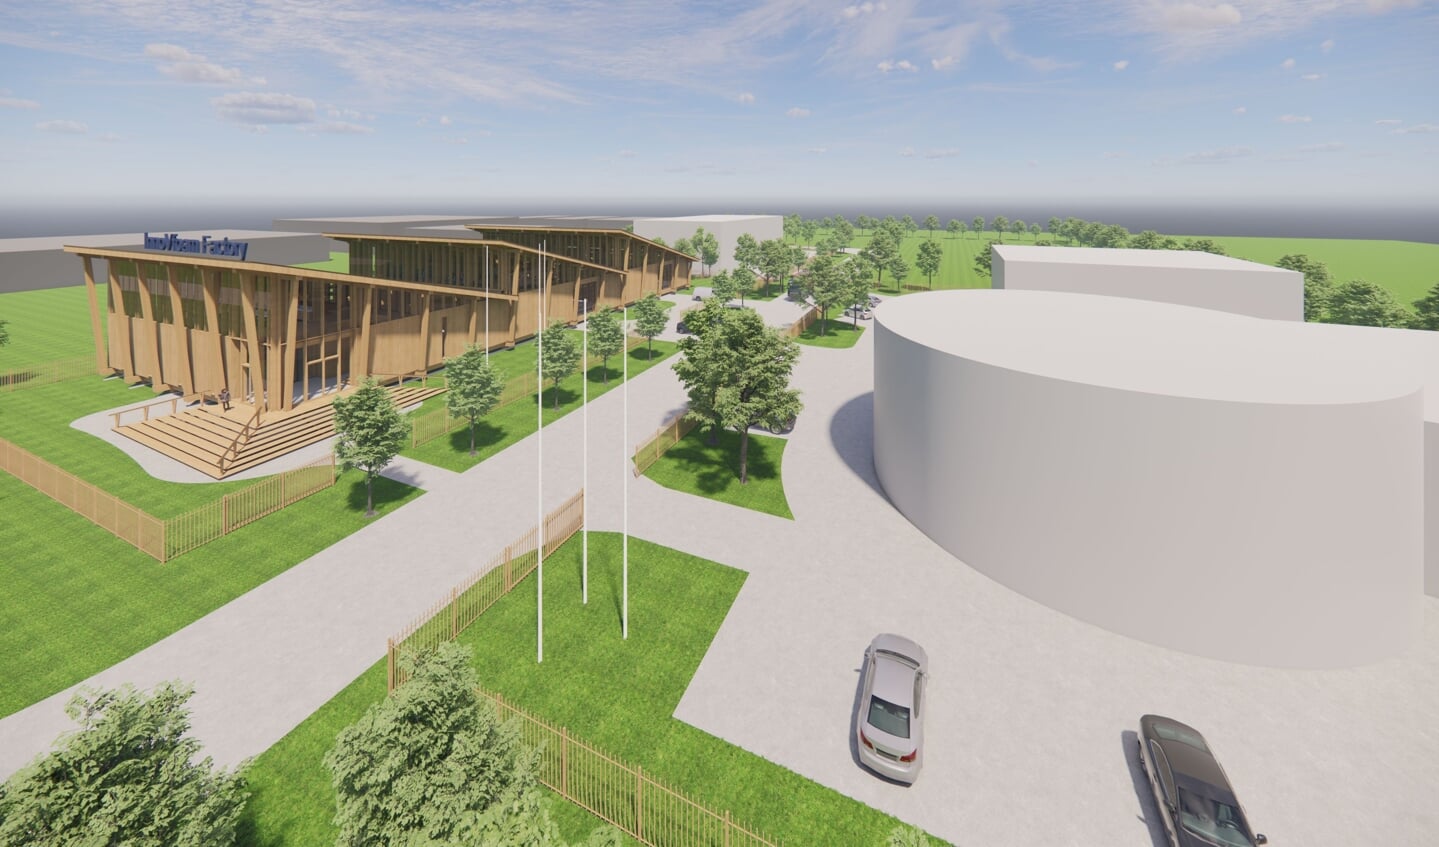 De nieuwe fabriekshal wordt het vierde pand op de InnoVfoam Campus aan de Lorrie in Oudkarspel; naast het hoofdkantoor, de R&D hangar en de opslaglocatie.